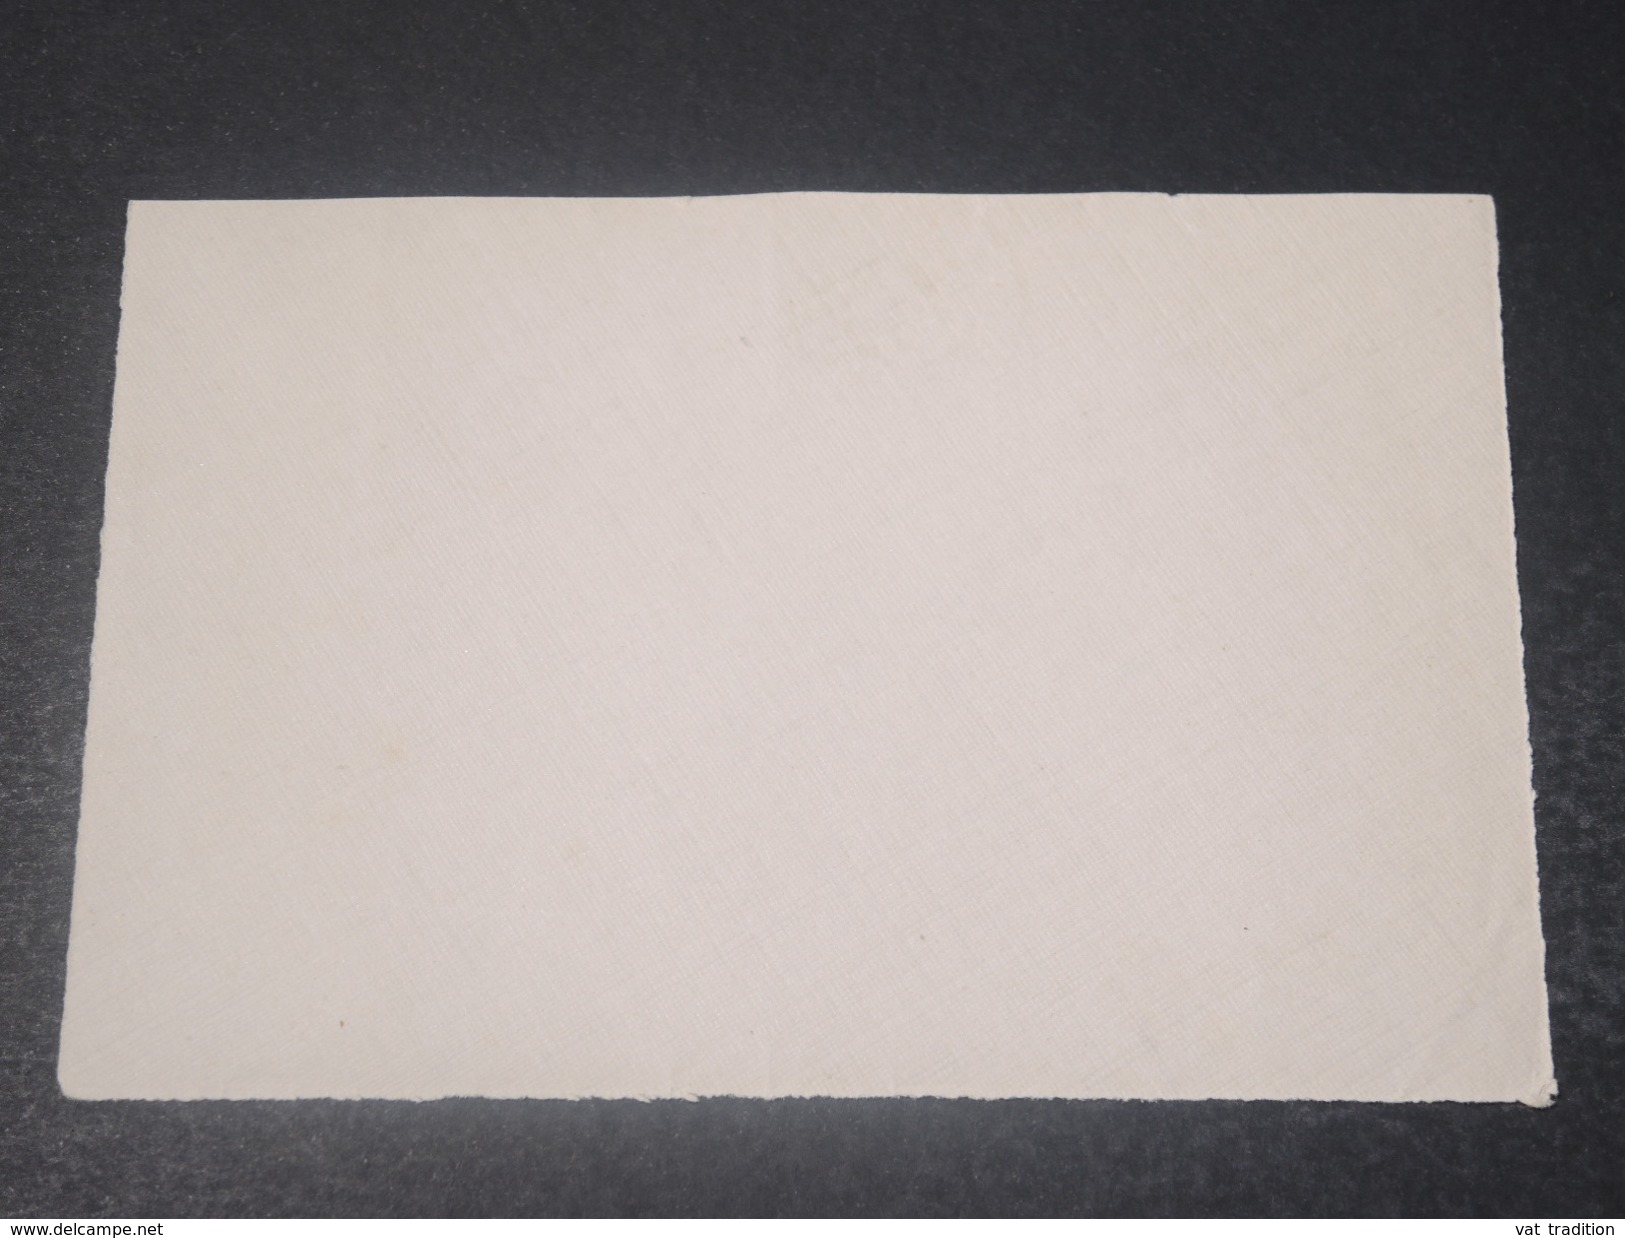 SOUDAN - Enveloppe ( Devant ) De Kayes Pour Paris En 1929 -  L 10767 - Storia Postale